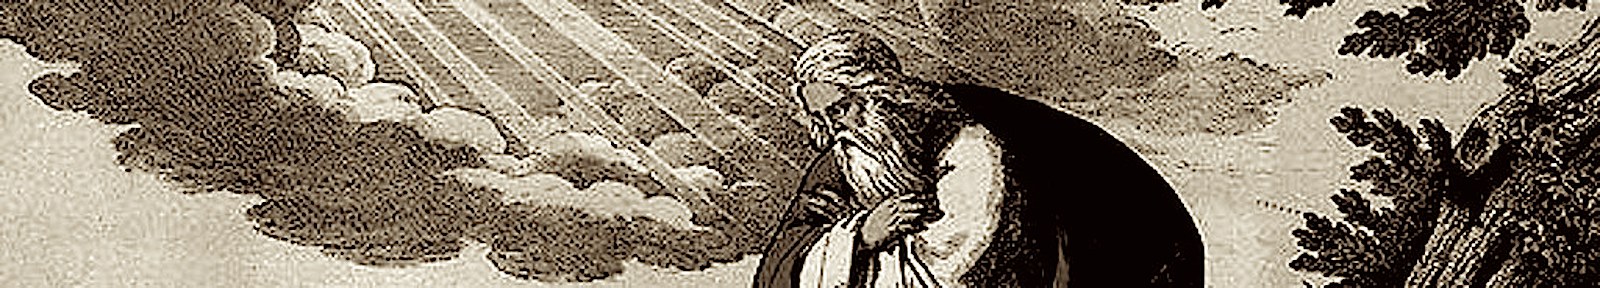 Моисей получает от Бога дары чудотворений и пророчеств